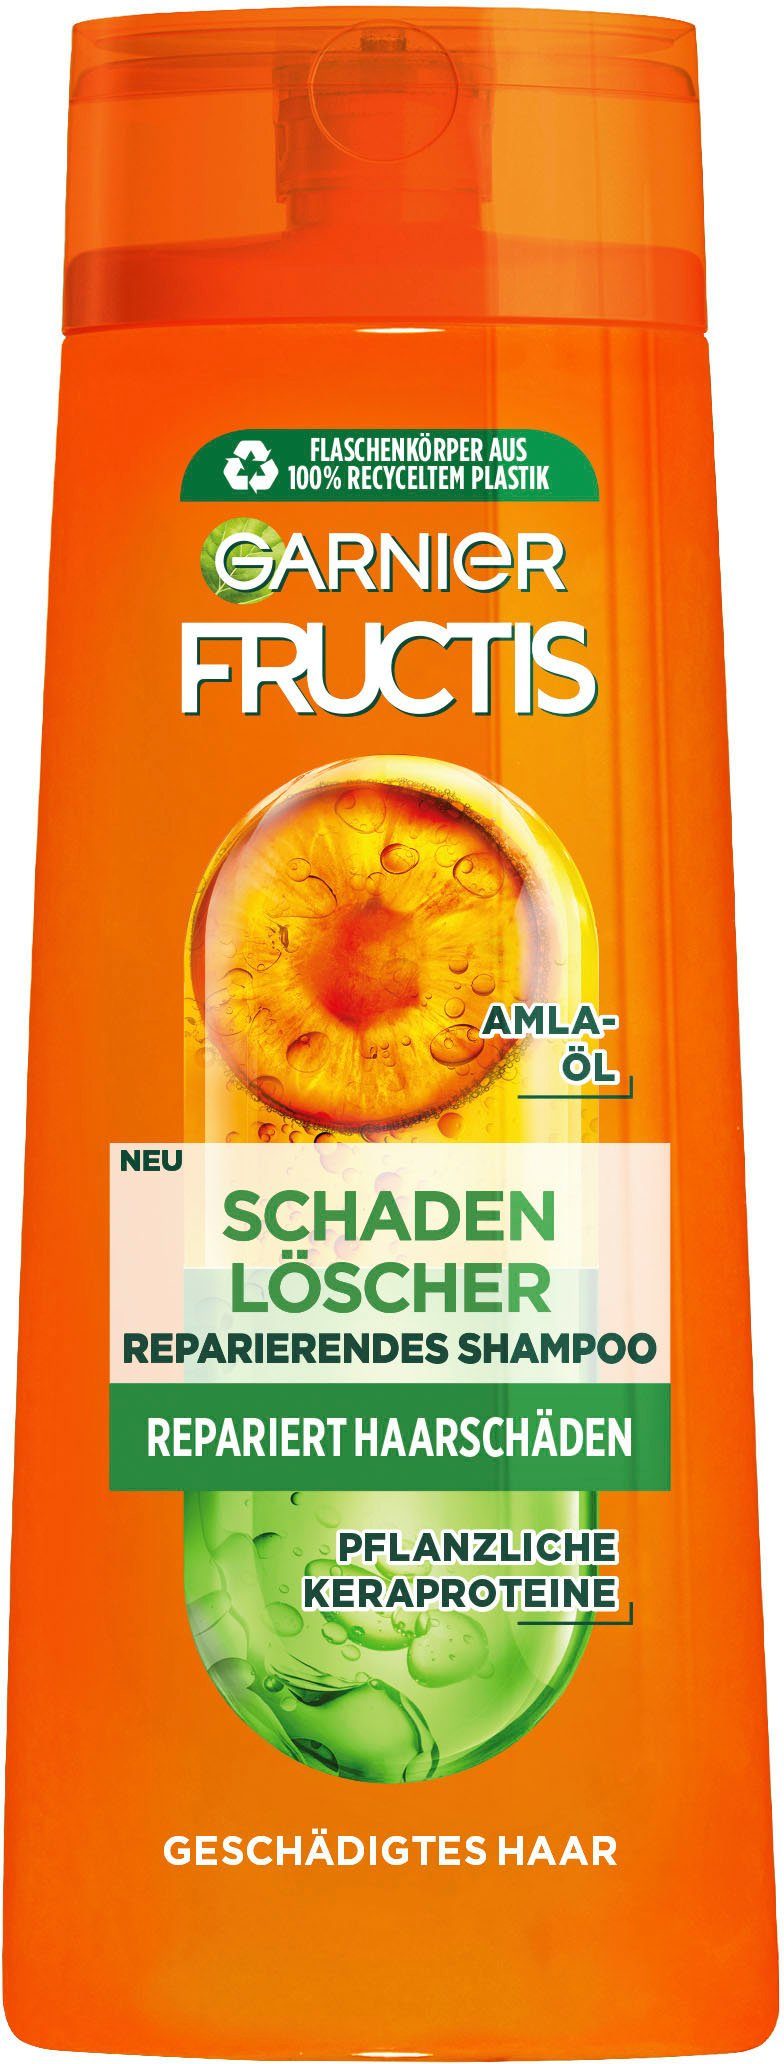 Garnier Fructis Set, Schadenlöscher GARNIER Haarshampoo Shampoo,